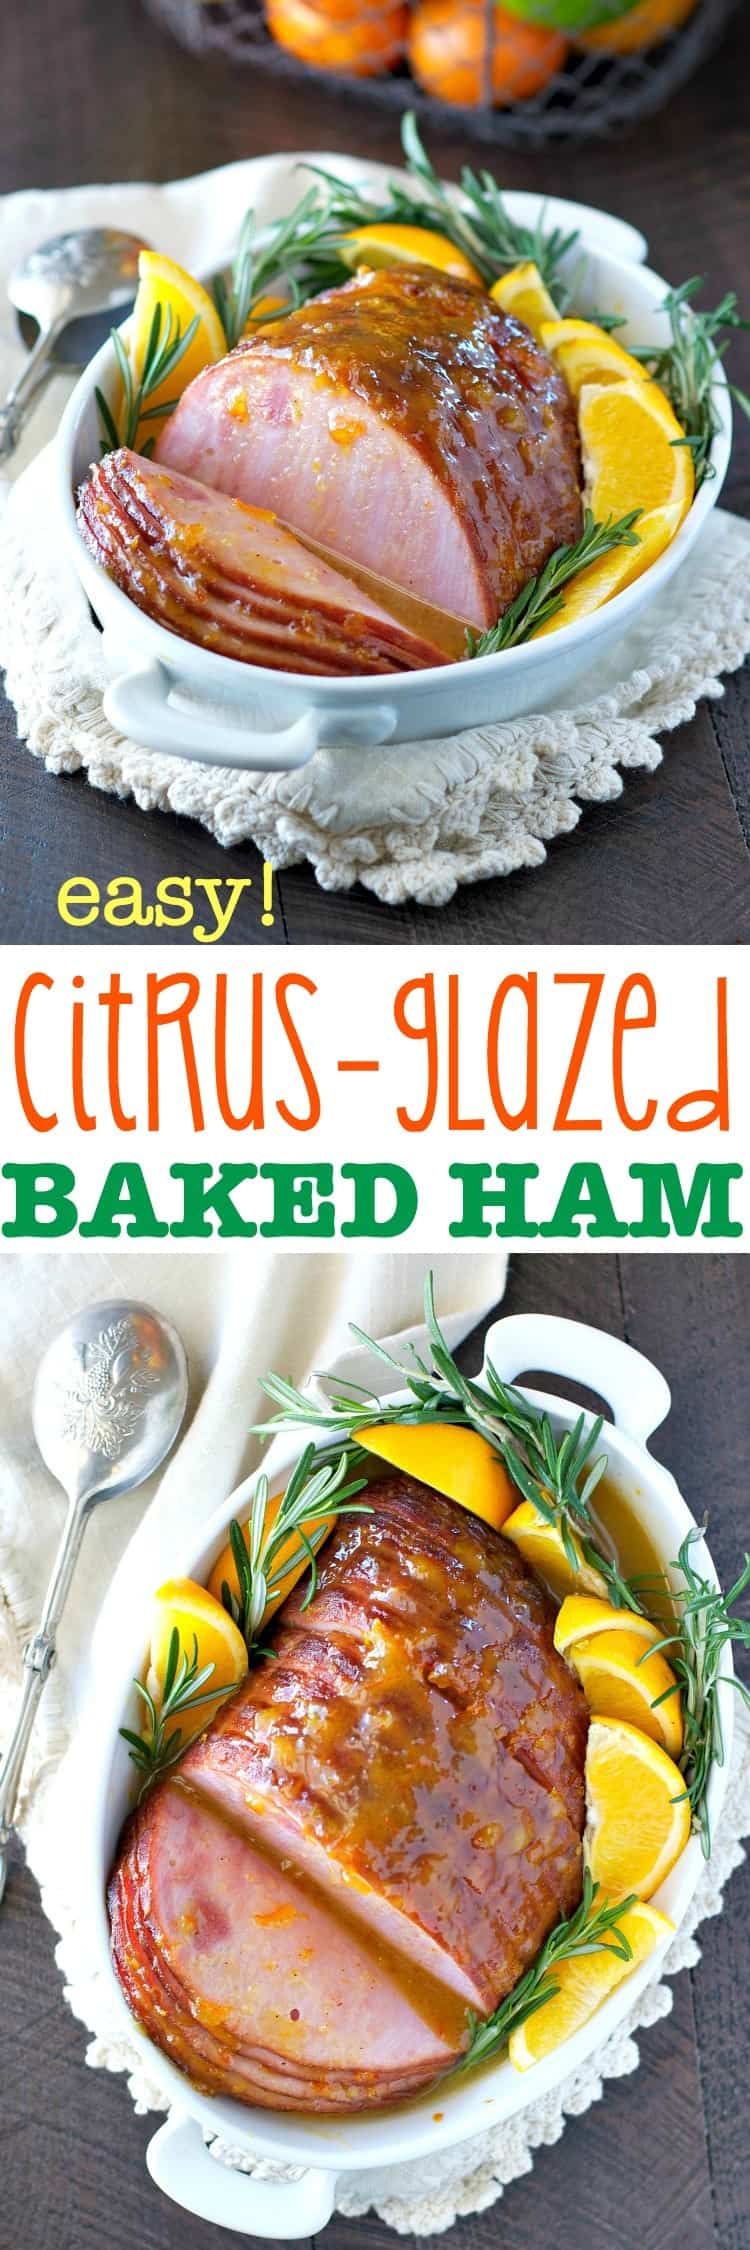 Easy Citrus Glazed Baked Ham - The Seasoned Mom